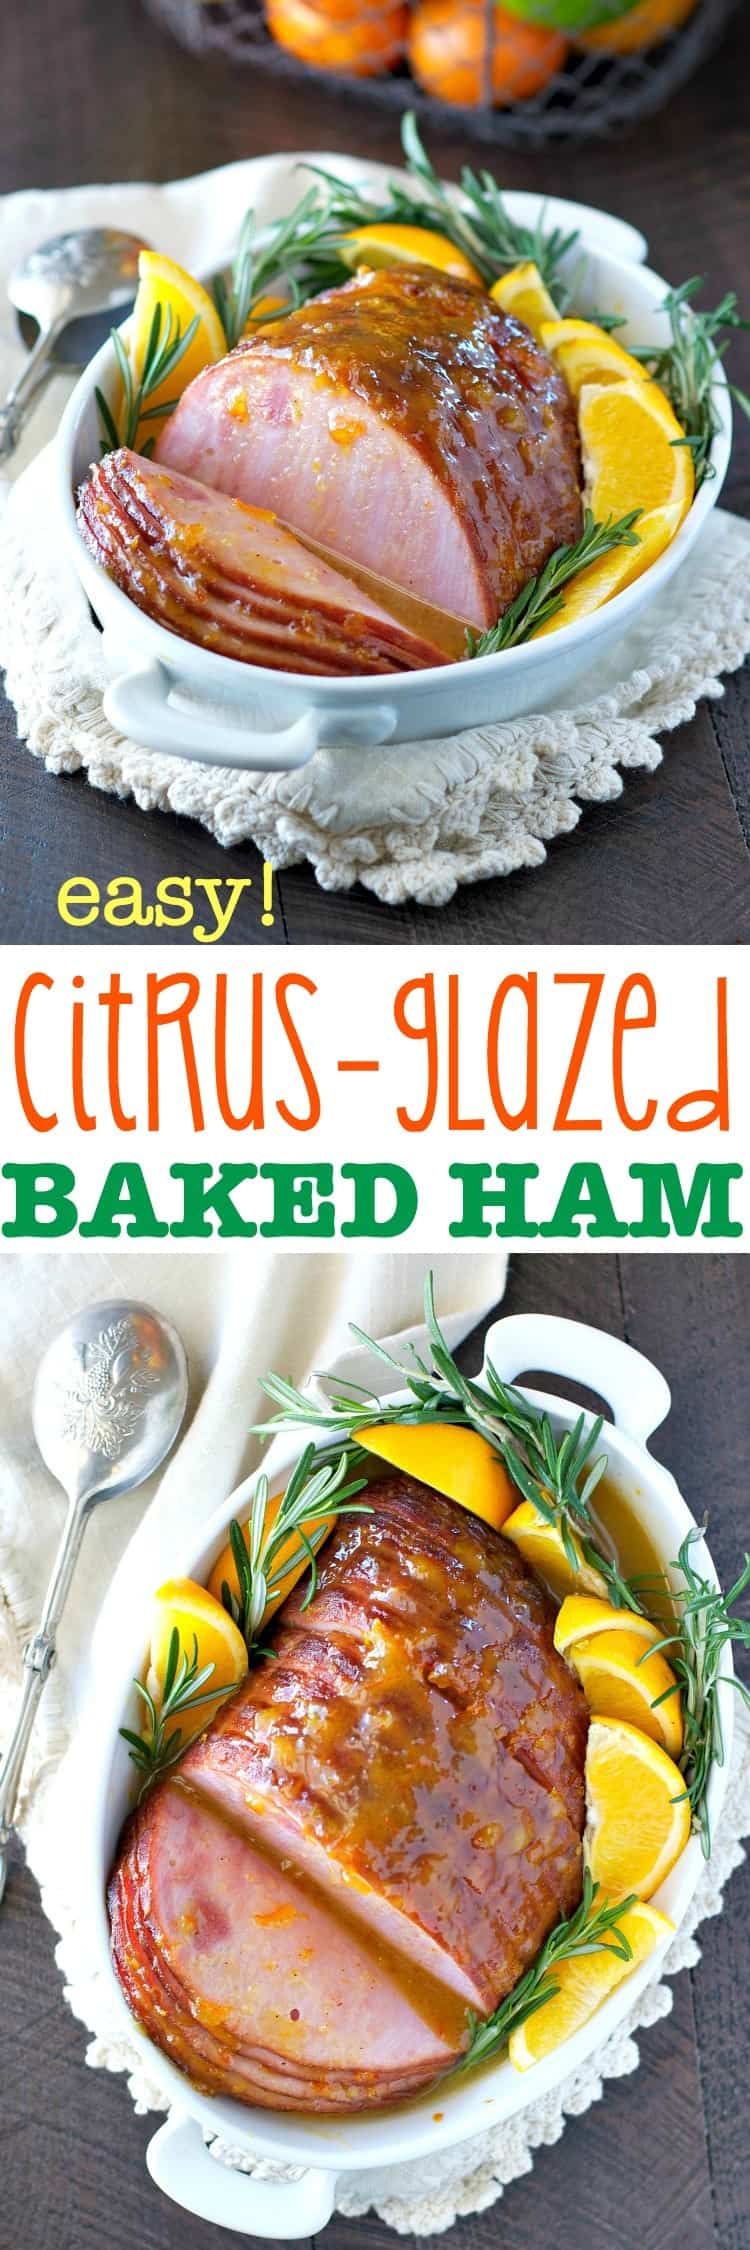 Easy Citrus Glazed Baked Ham - The Seasoned Mom